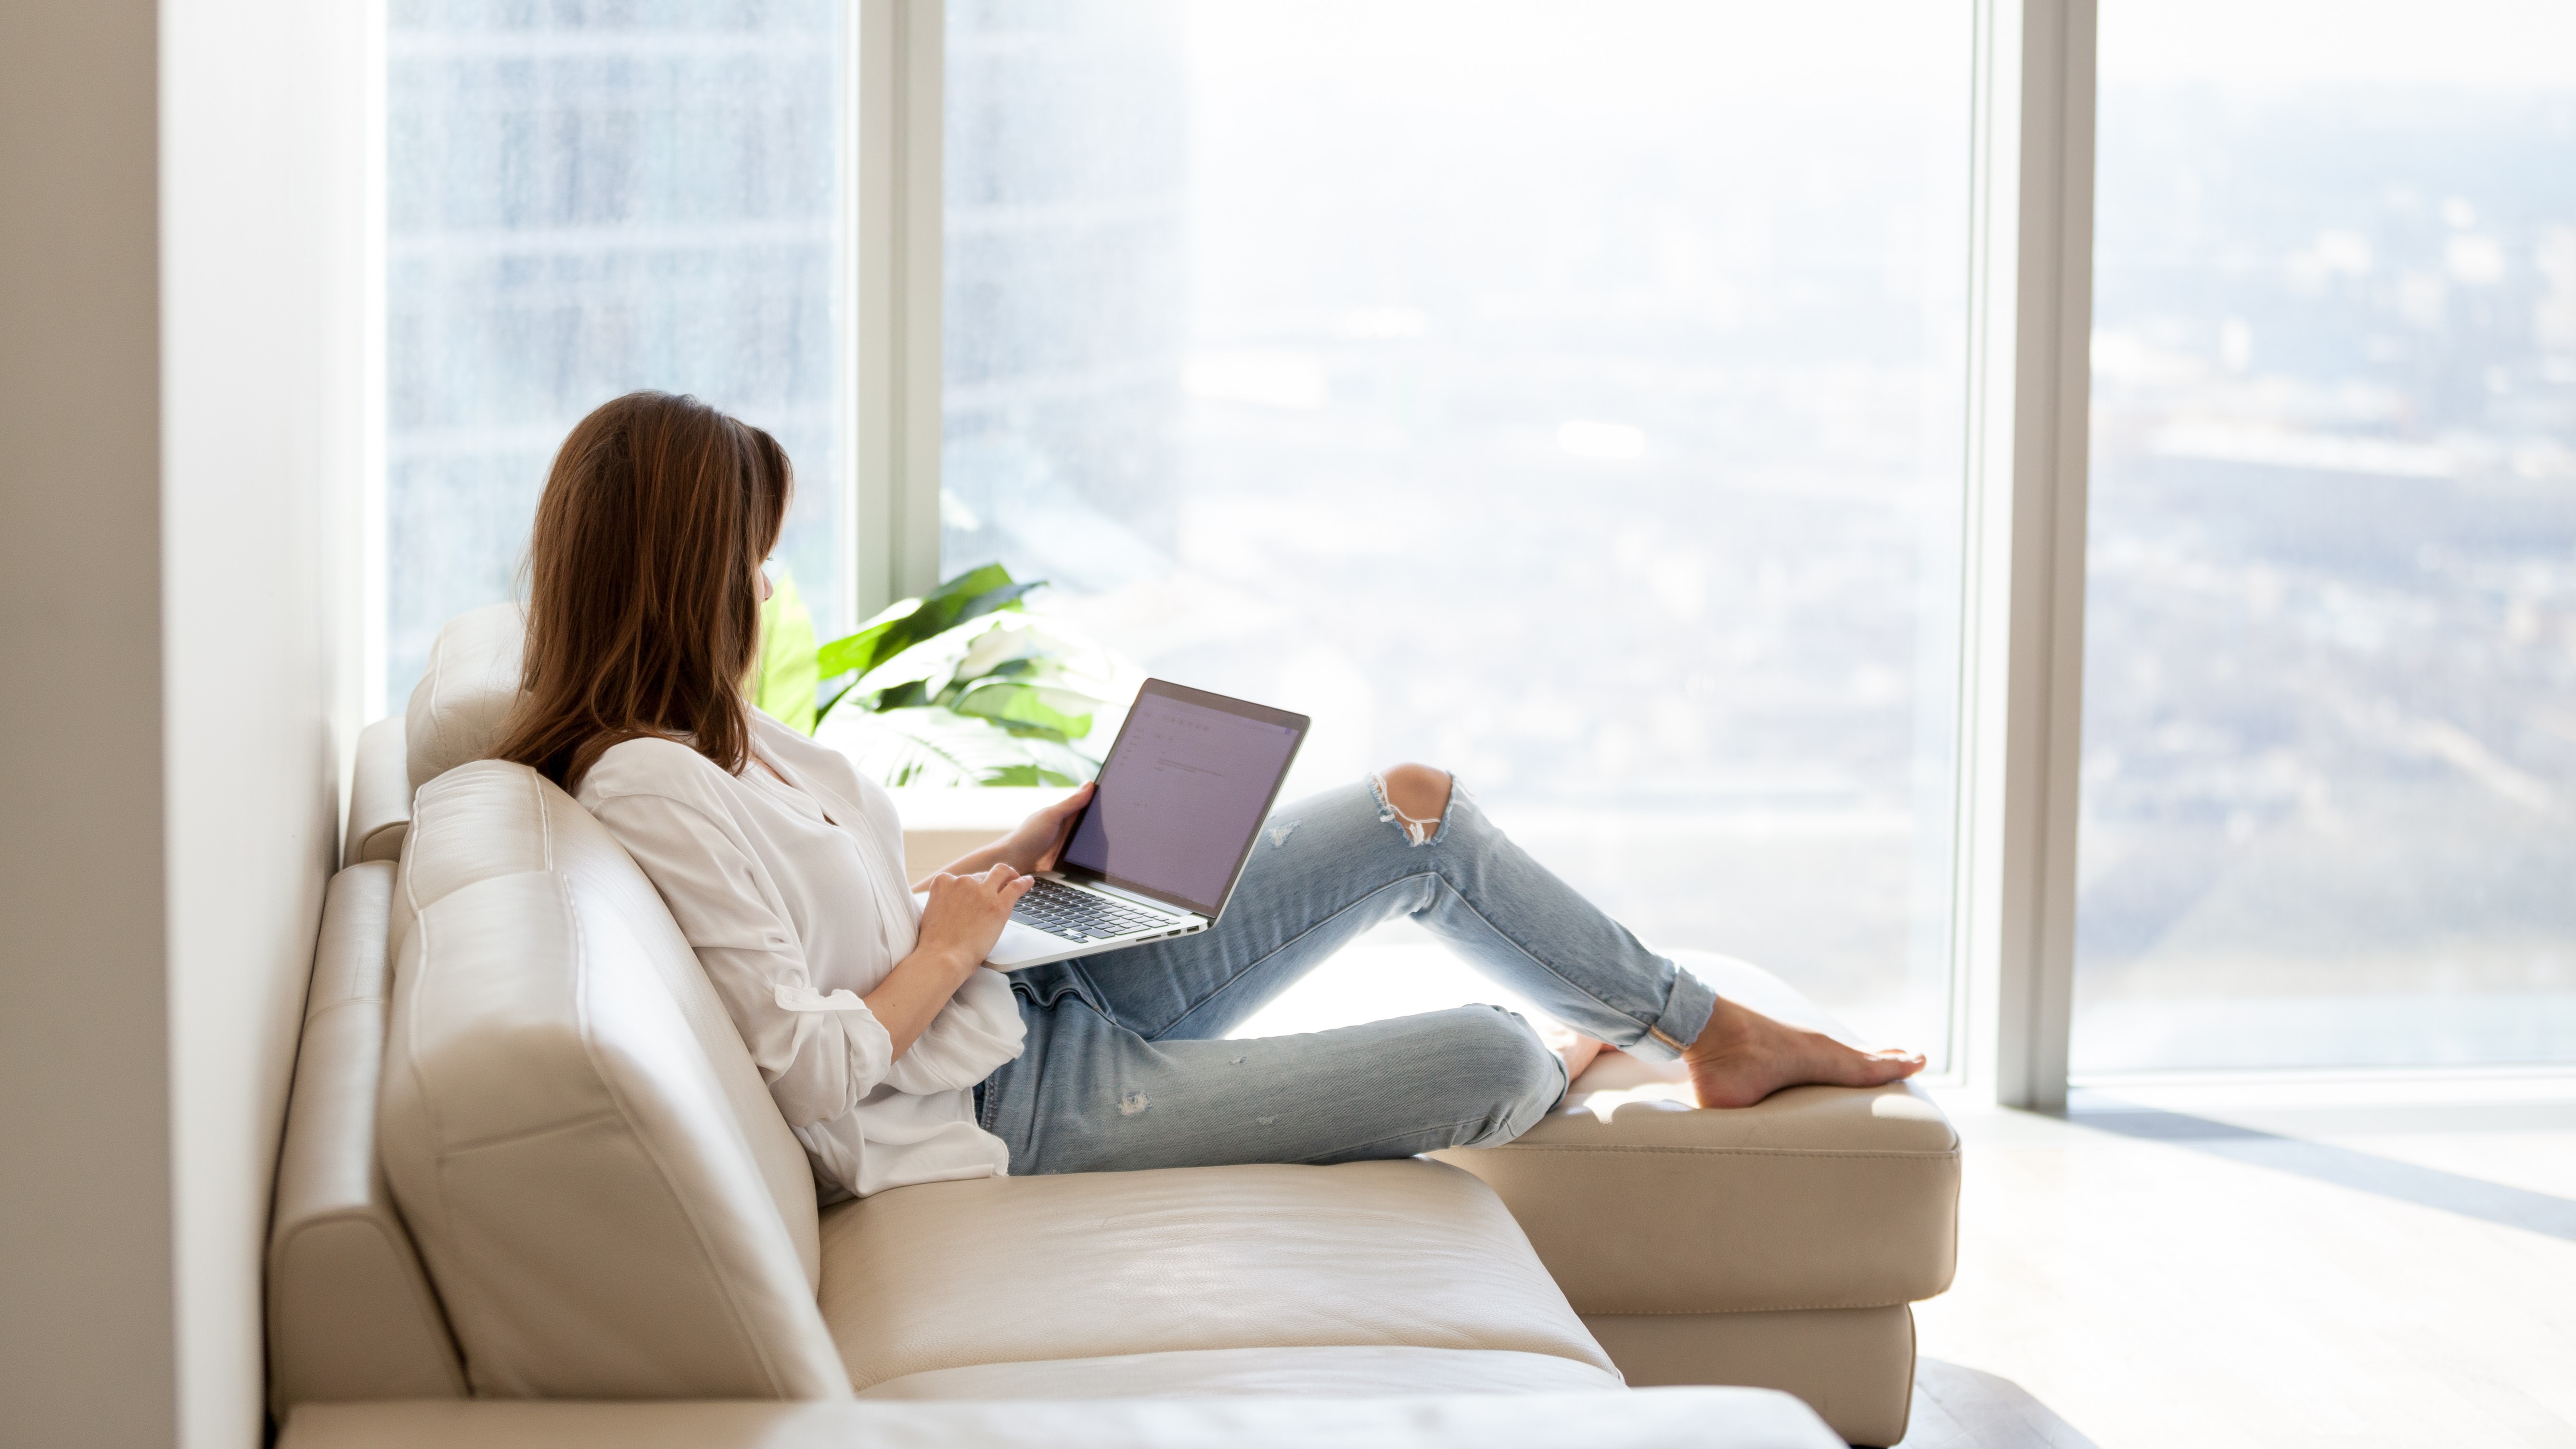 Женщина отдыхает на диван, держит ноутбук на коленях и пользуется им